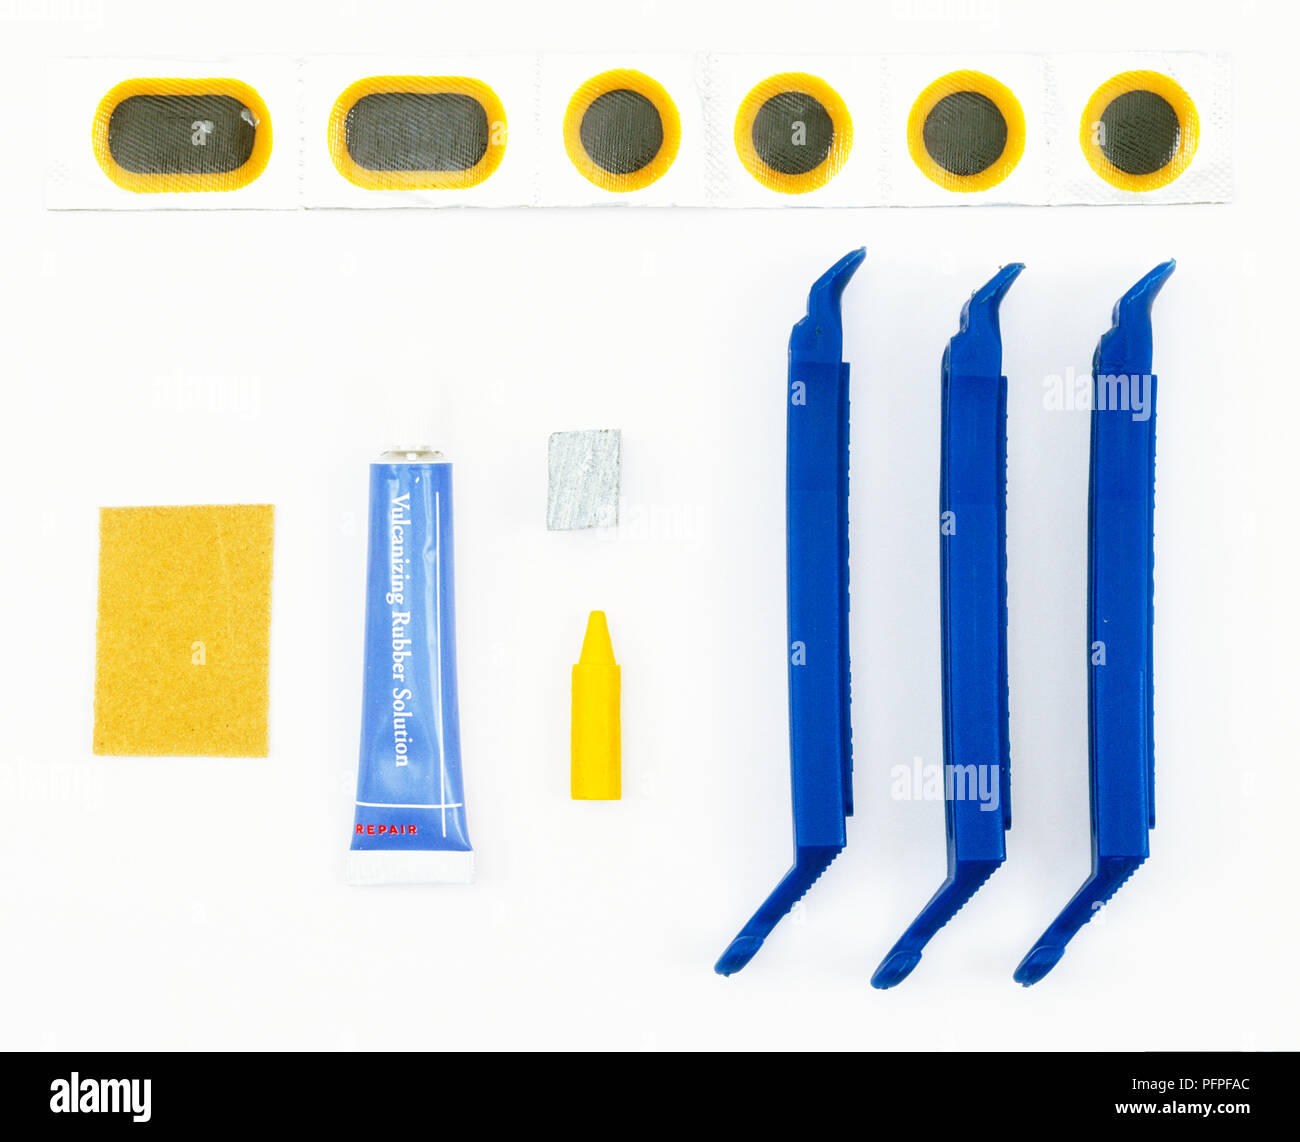 Elementi per una bicicletta kit di riparazione, carta vetrata, colla, patch, pastello, gesso e le leve dei pneumatici. Foto Stock